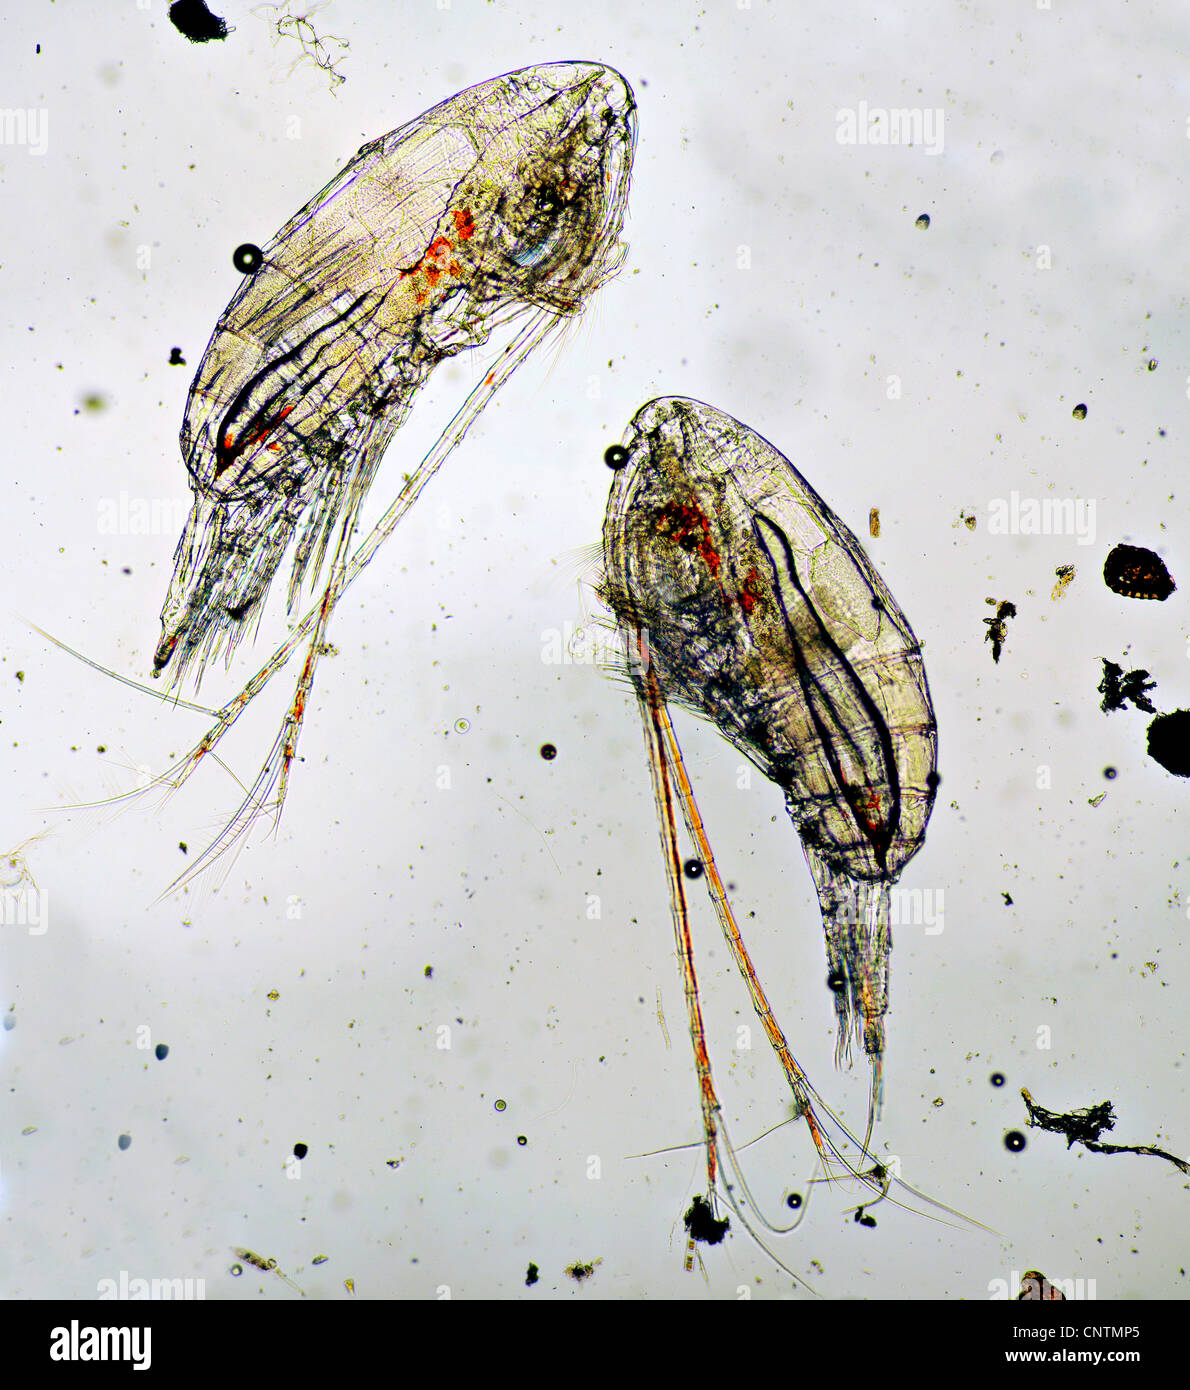 Copepod (Calanus finmarchicus), The planktonic Crustacean Calanus finmarchicus, the most common zooplankton in the North Sea Stock Photo